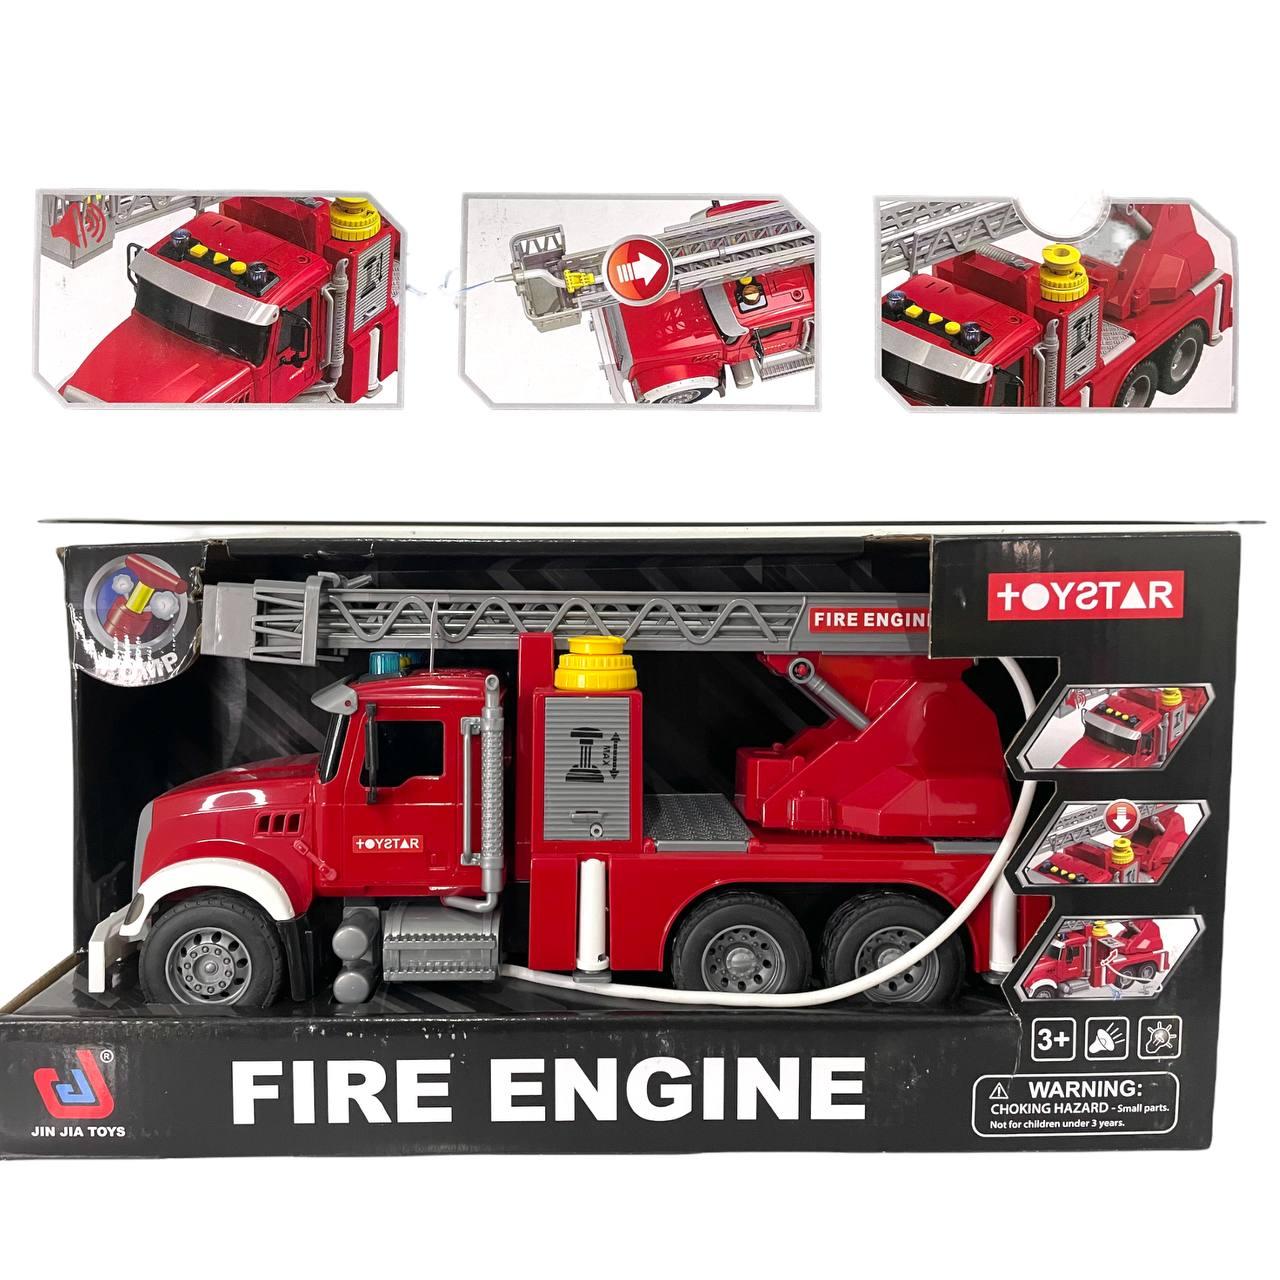 666-58P Fire engine пожарный кран, 3 функции со звуком, 42*21см